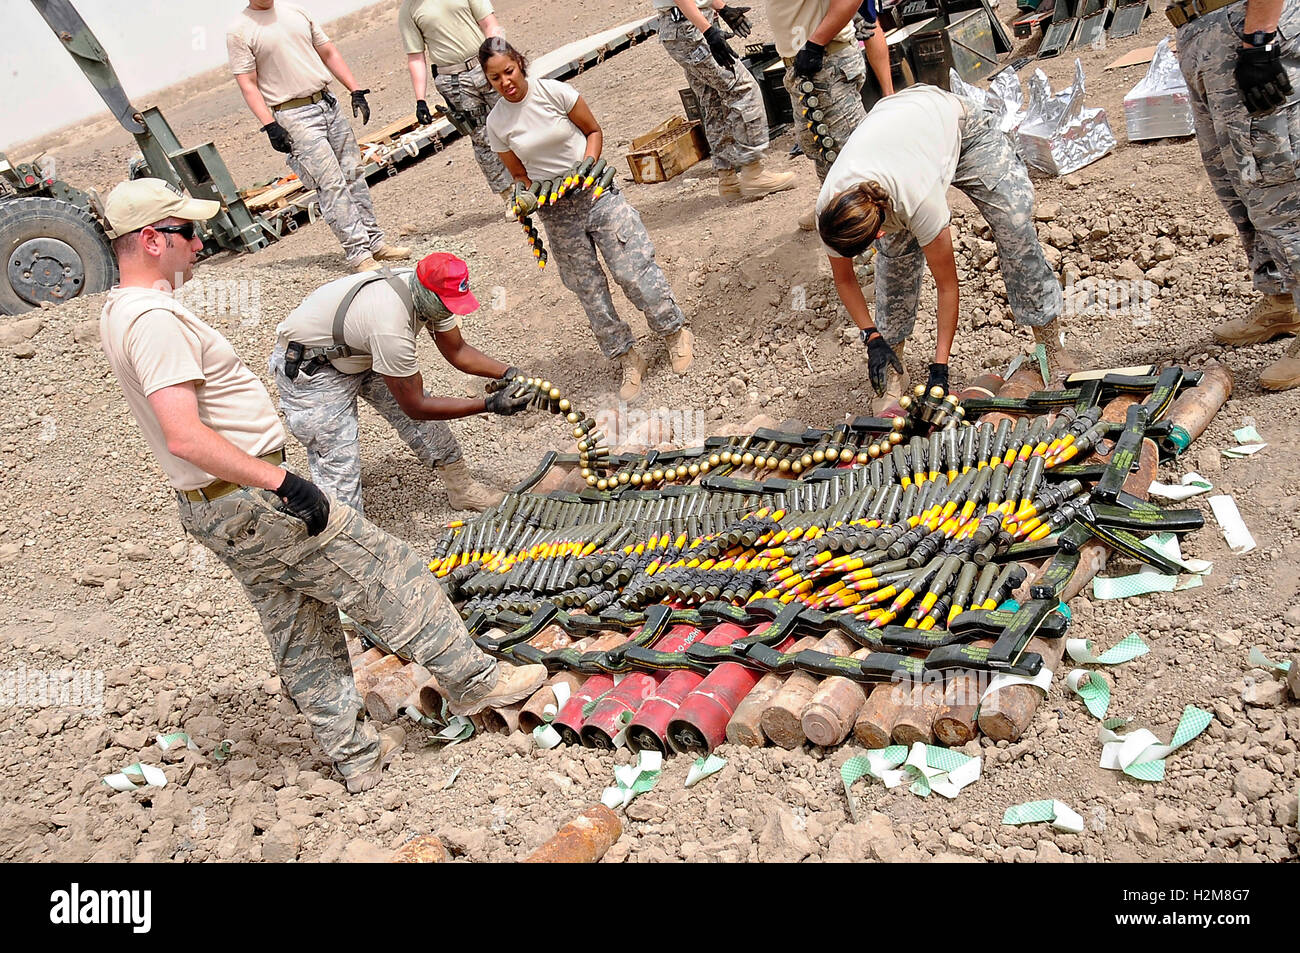 US-Soldaten bereiten beschlagnahmte Munition für eine kontrollierte Sprengung auf Ali Base 30. April 2009 in der Nähe von Nasiriyah, Irak. Stockfoto